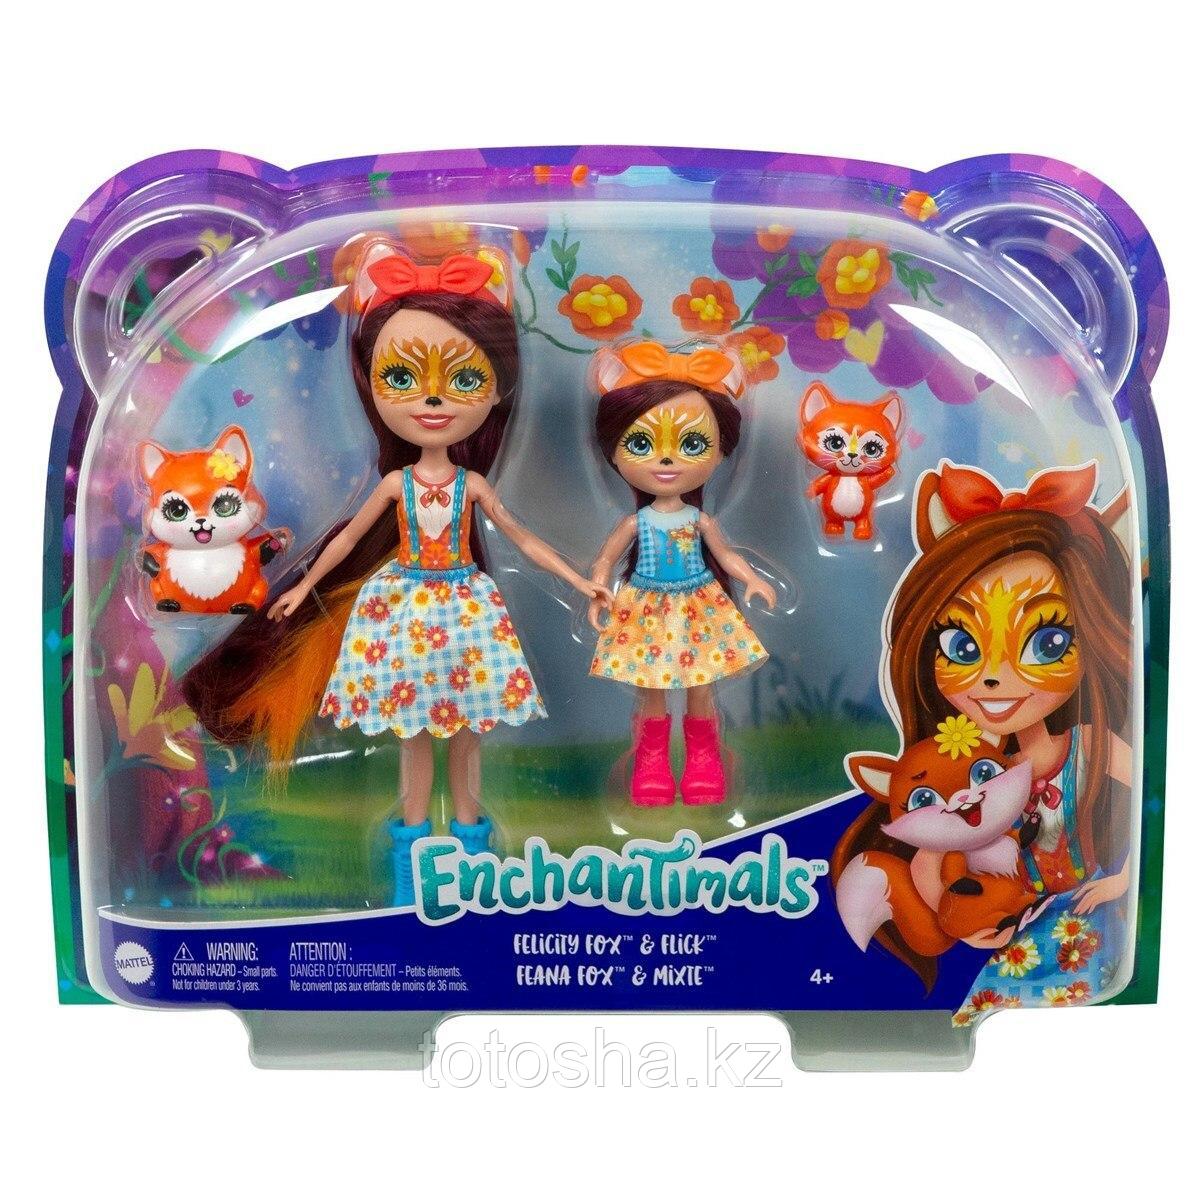 Куклы Enchantimals "Фелисити Лис с сестричкой Феаной Лис и питомцы " , Mattel HCF81